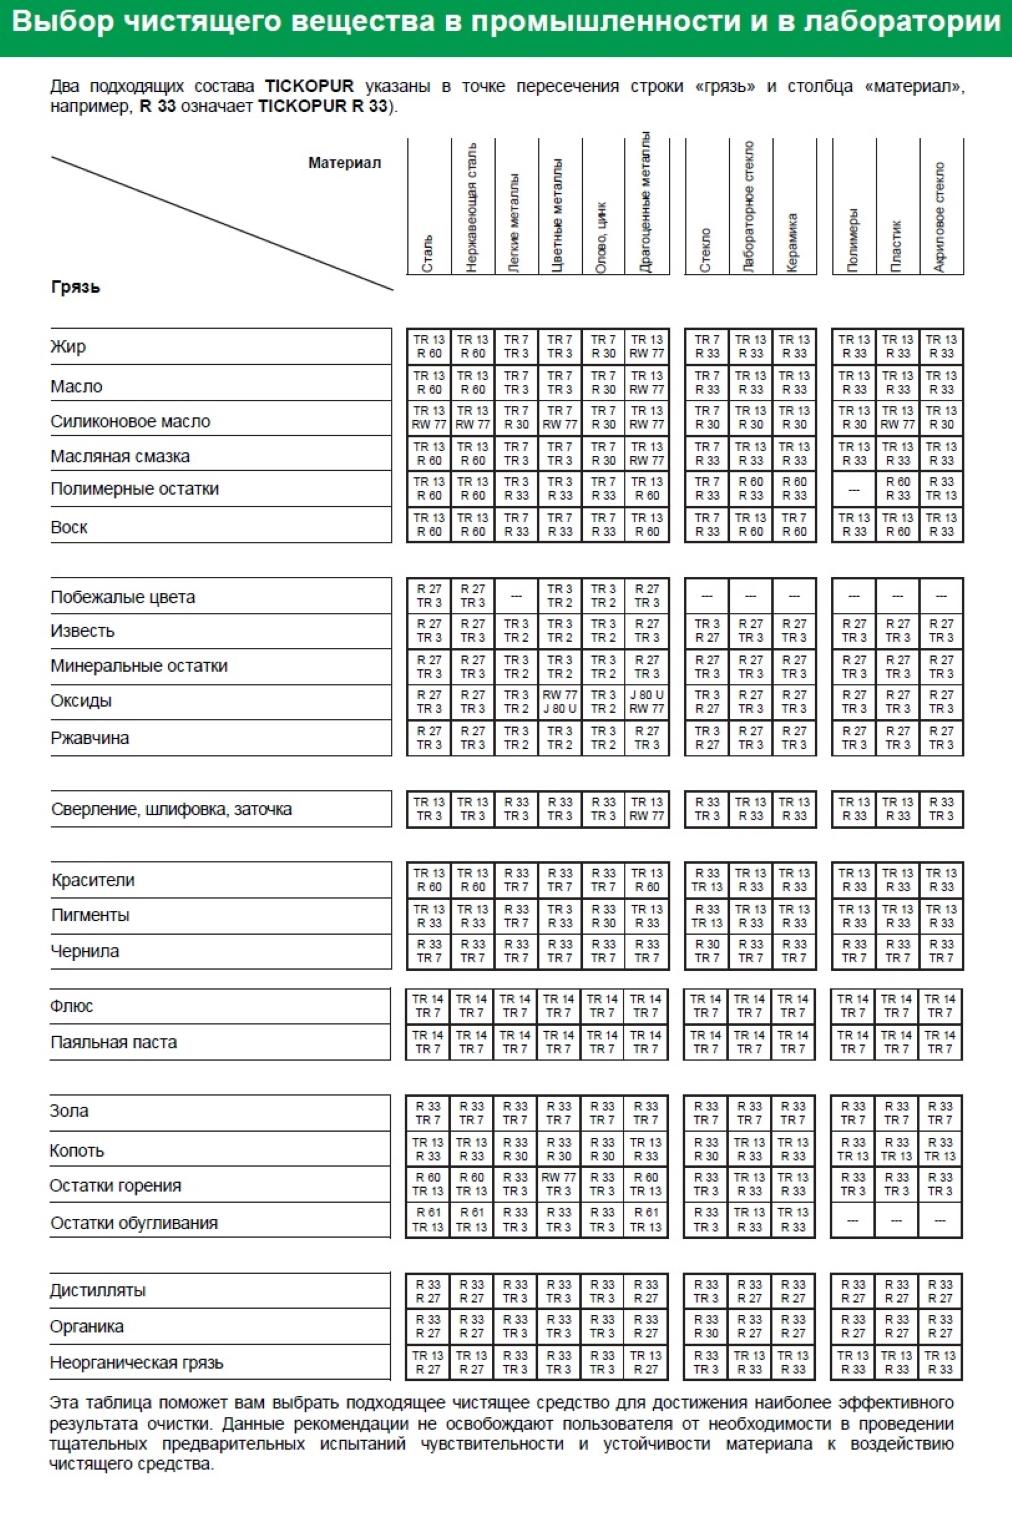 Таблица выбора чистящего вещества J 80 TICKOPUR U